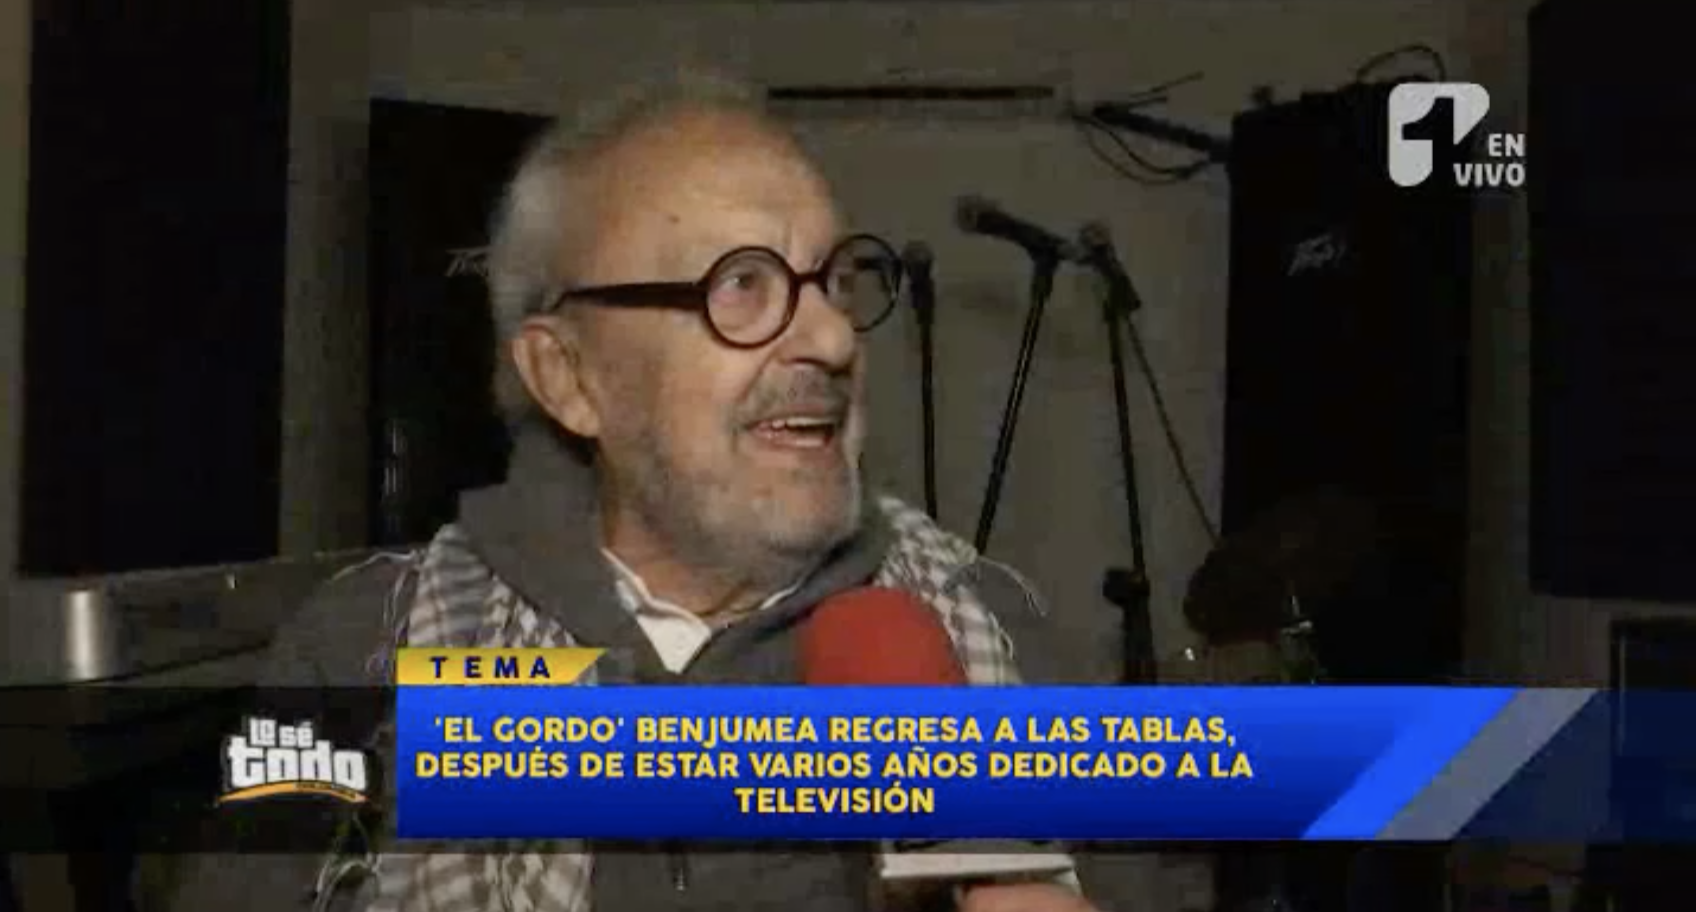 El Gordo Benjumea - El "Gordo" Benjumea tuvo que ser operado de urgencias - El actor tuvo una larga carrera en la televisión colombiana.